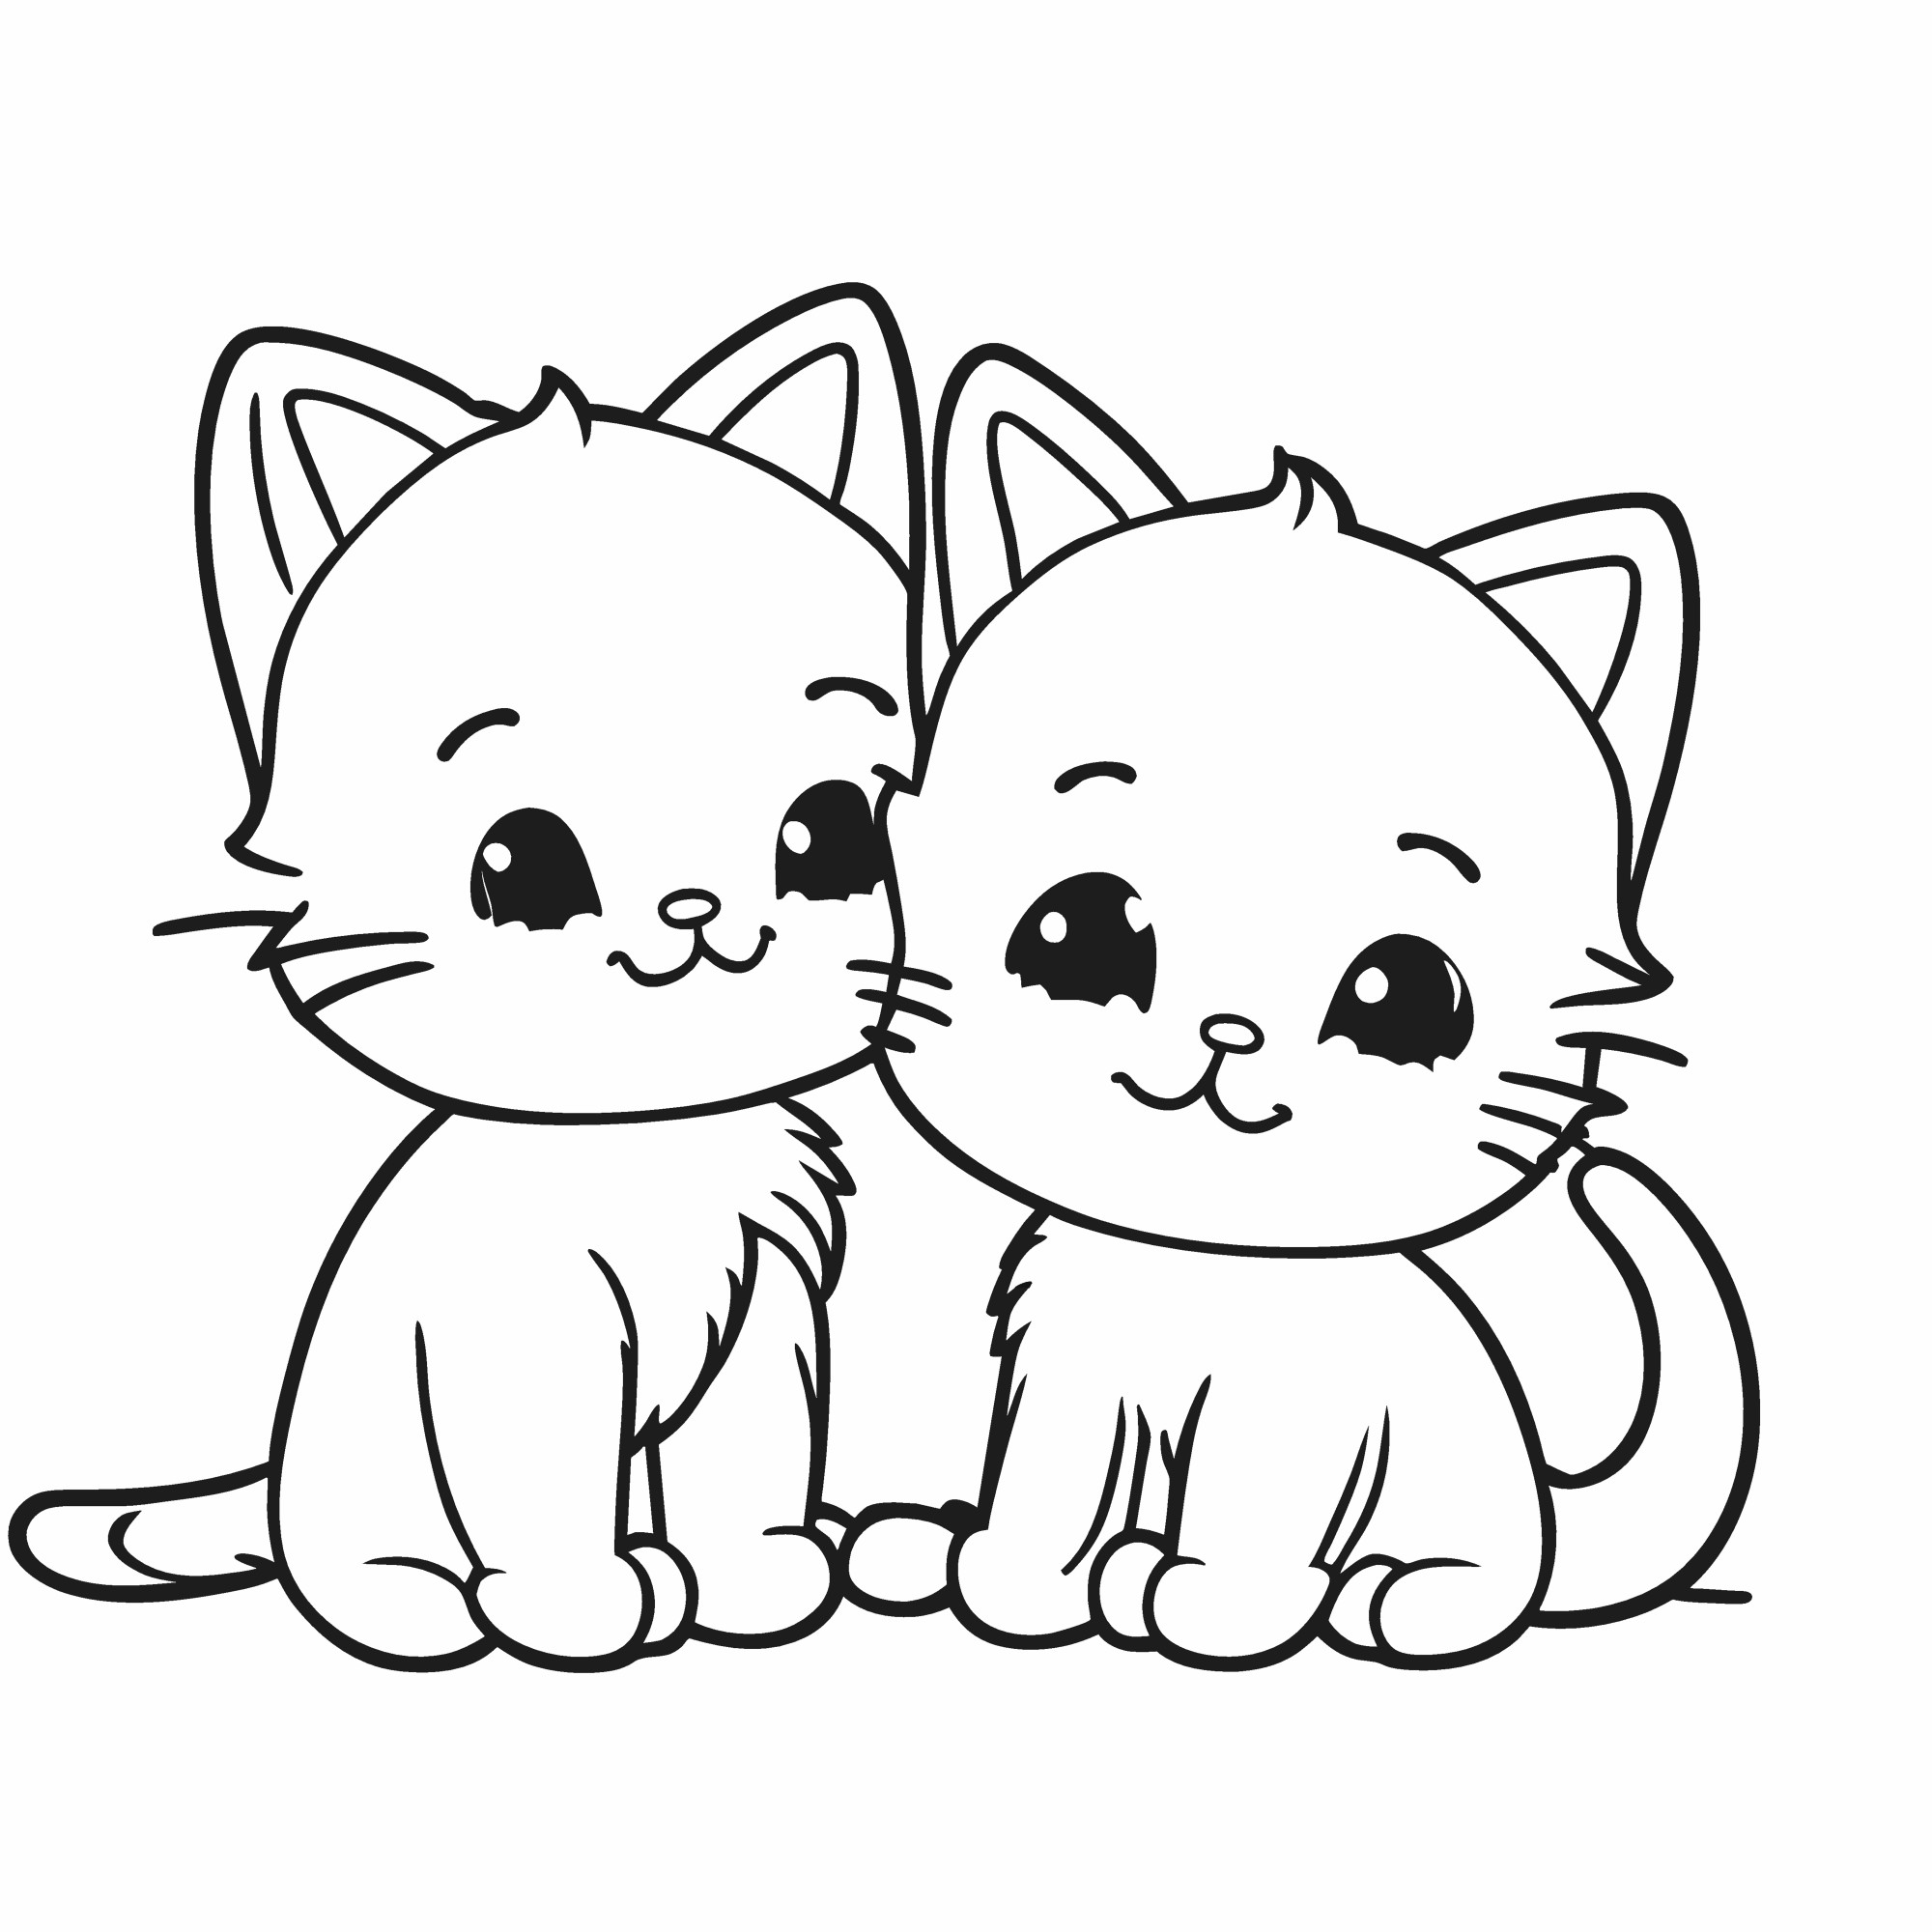 Раскраска для детей: два милых котенка